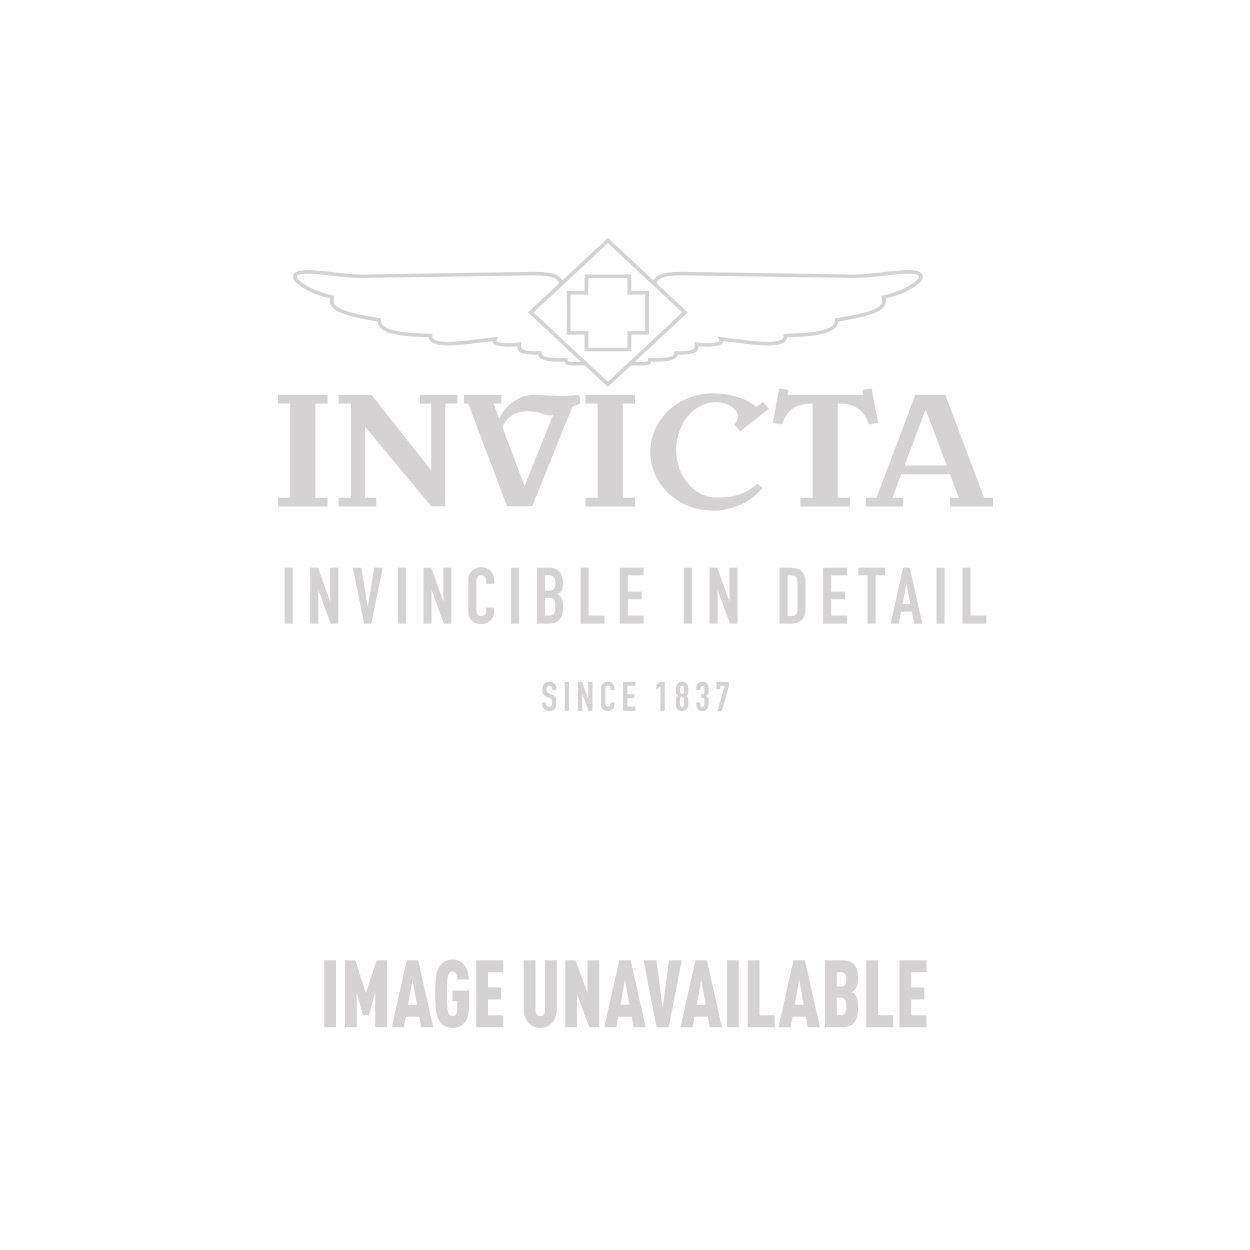 Invicta Model 31506